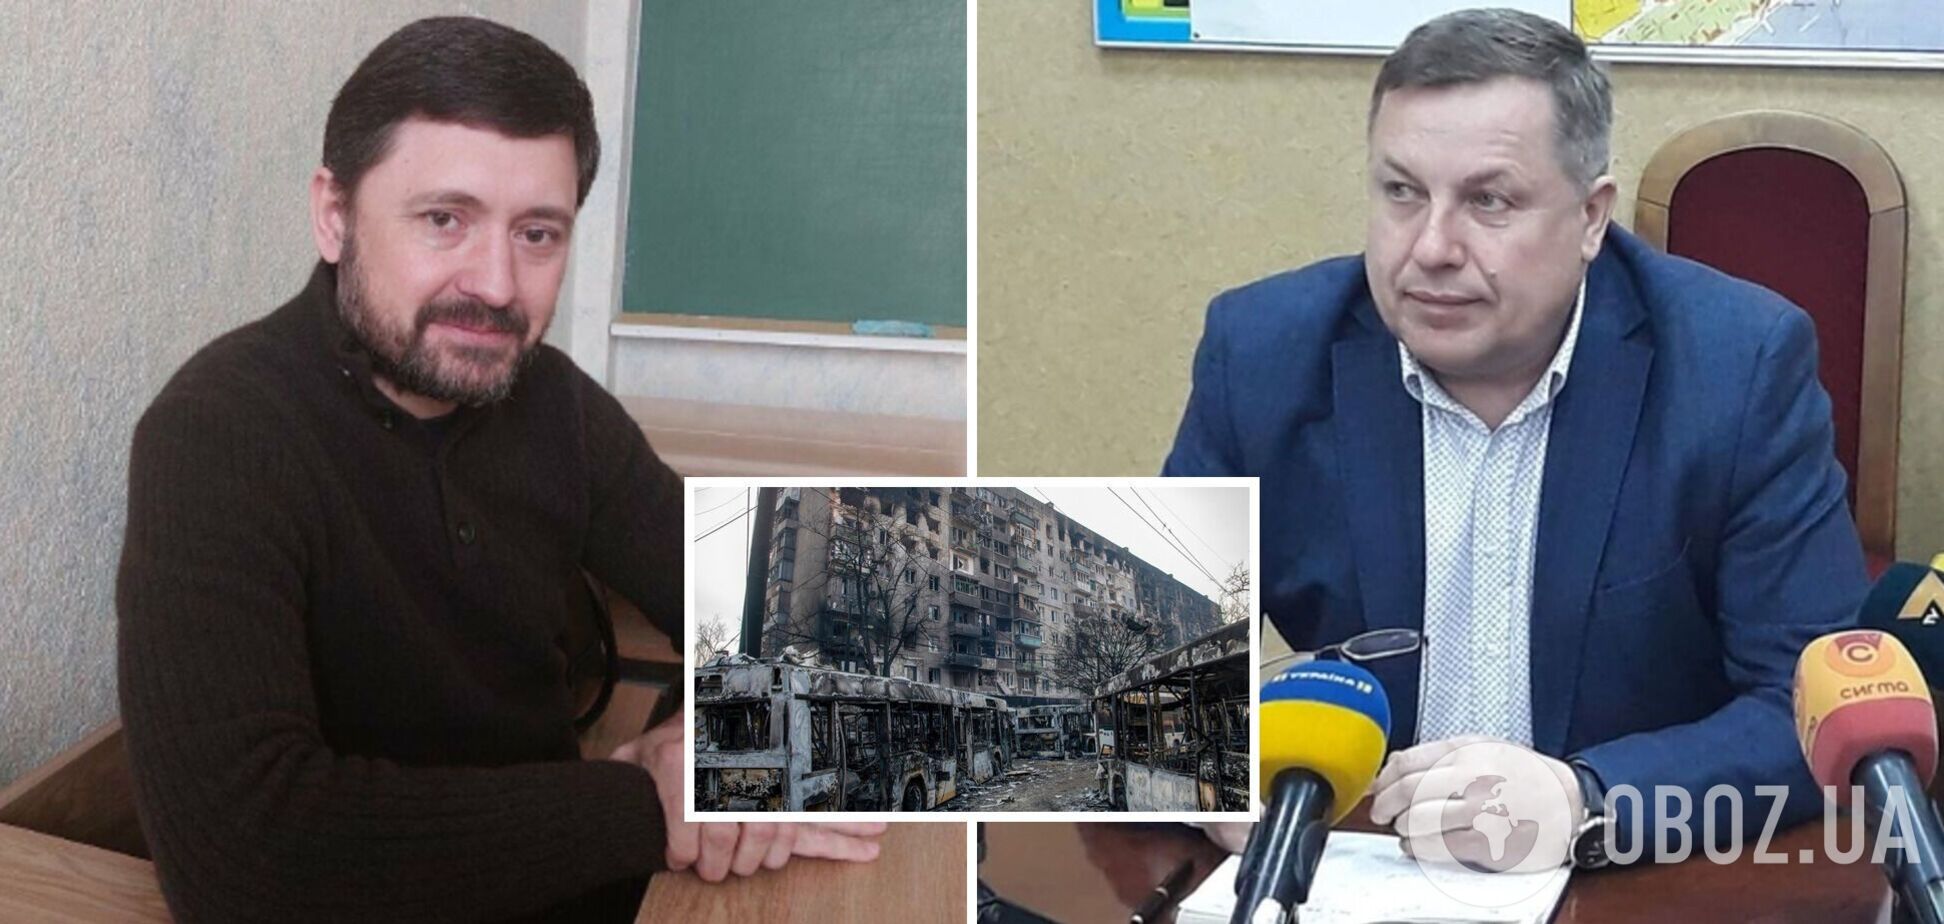 Заместитель мэра Мариуполя: я лично слышал, как мэру Бойченко приказали уехать из города